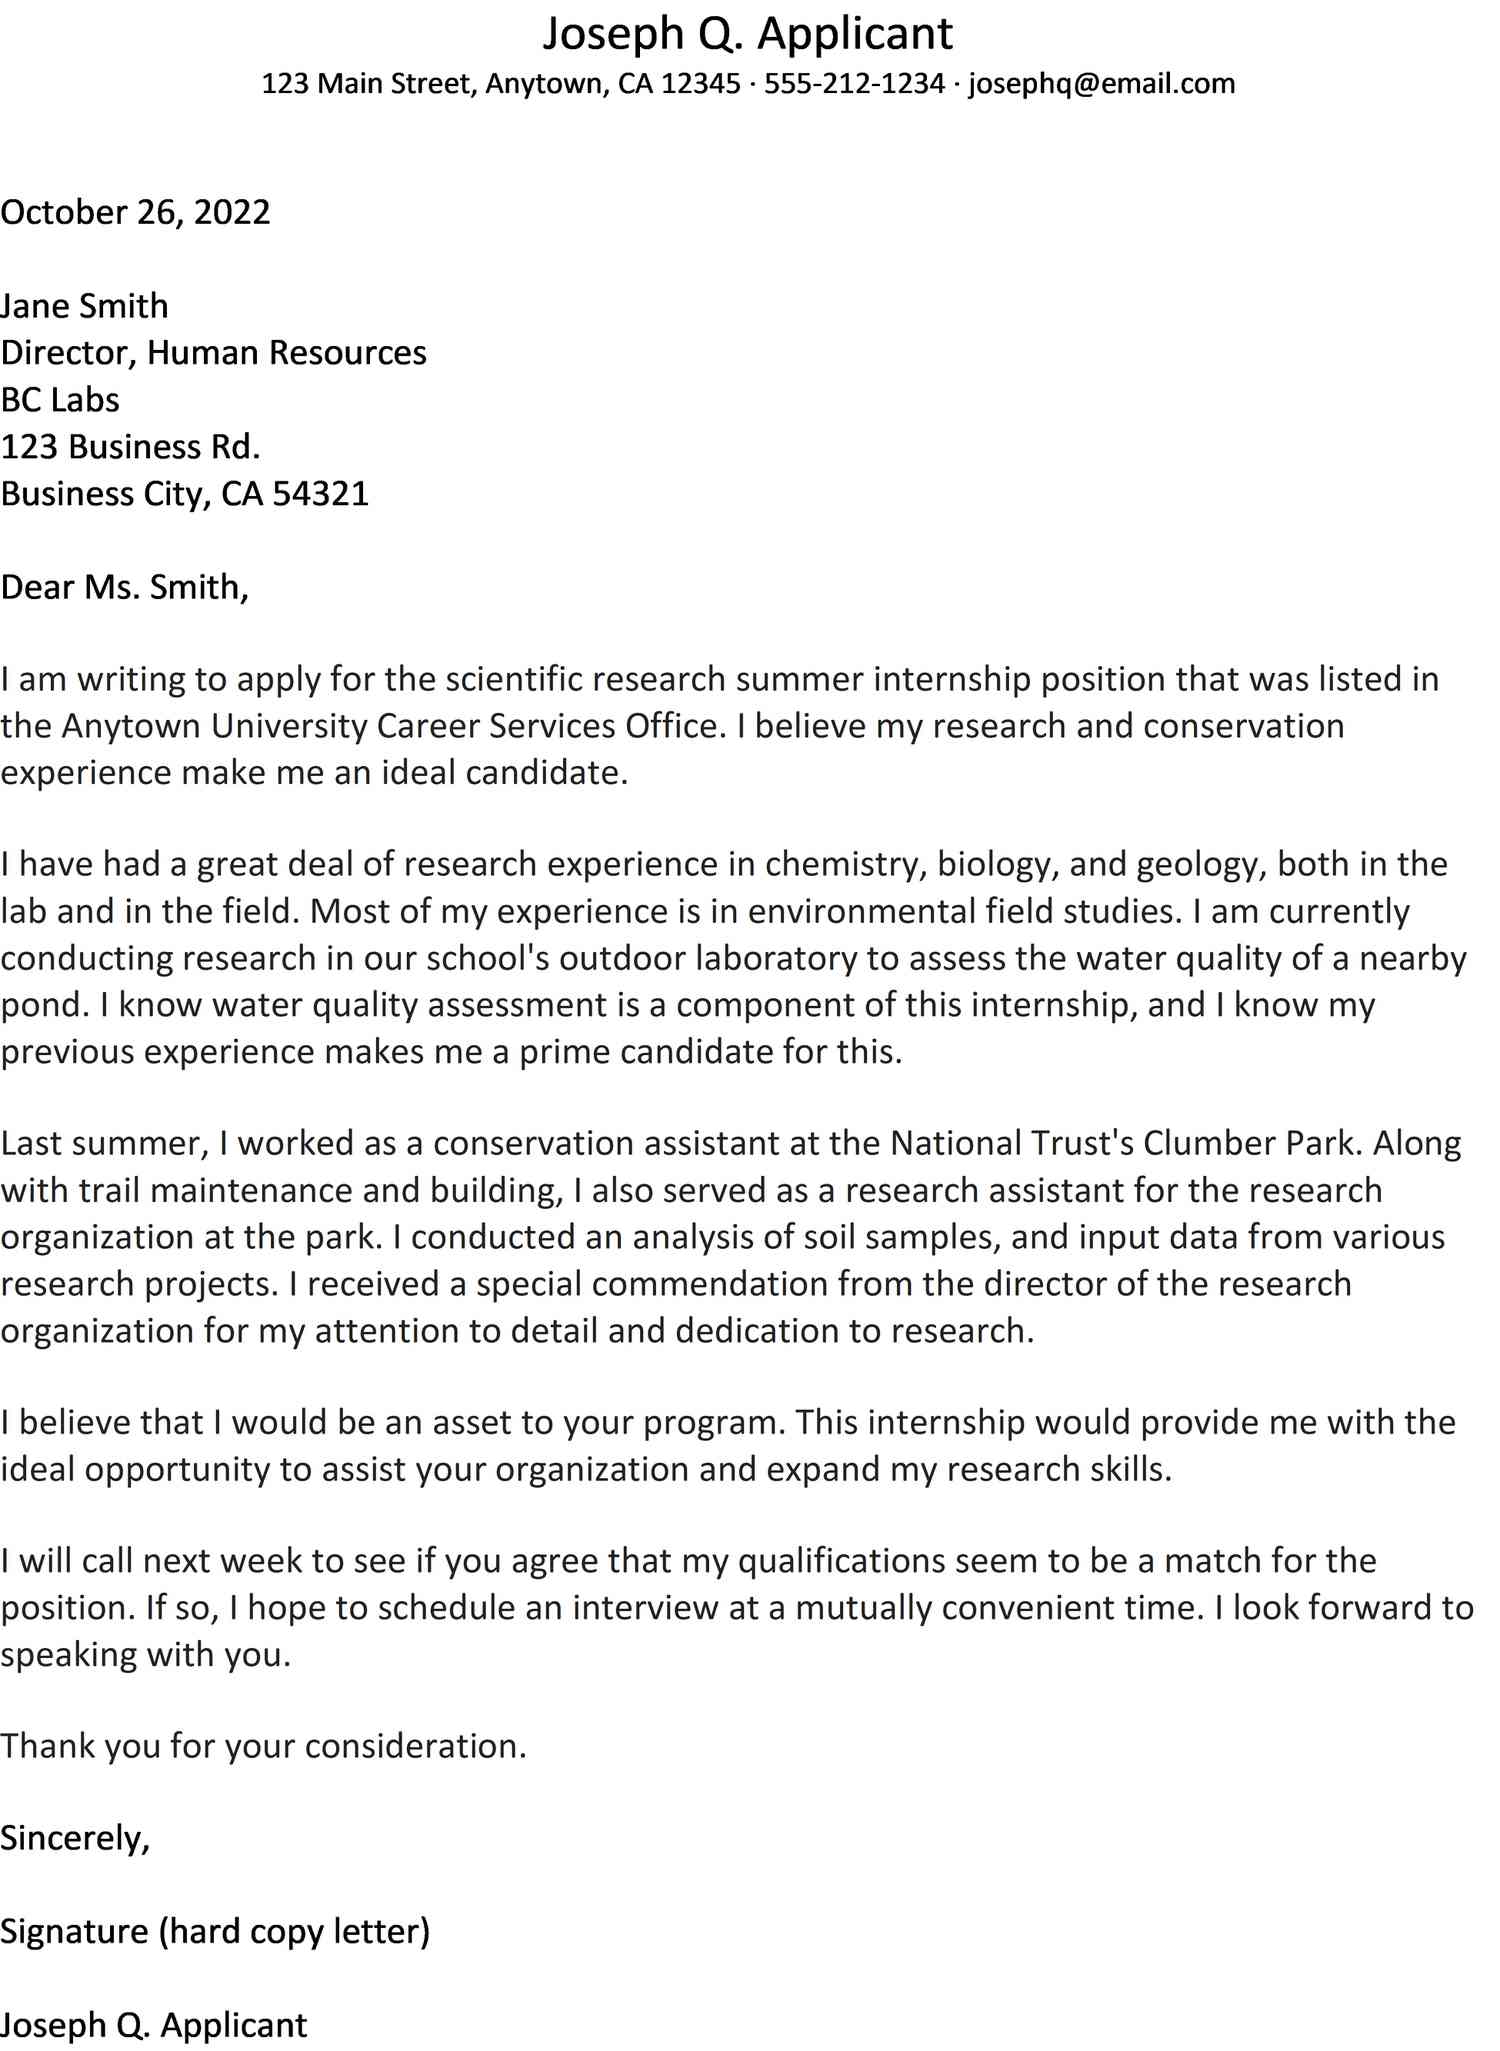 cover letter for chemistry internship